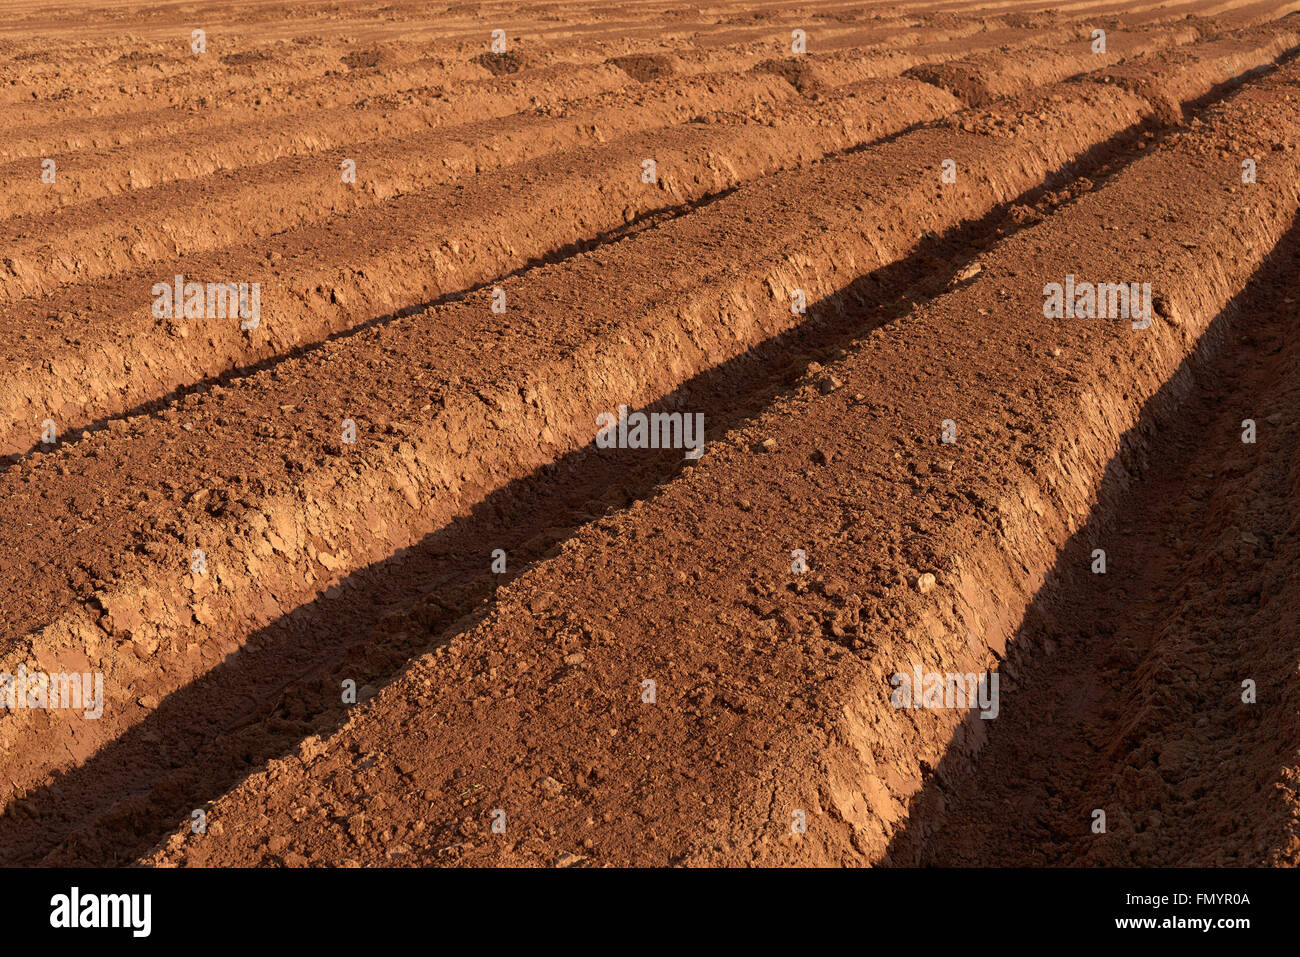 Arò brown fertile terreno coltivato in una molla Foto Stock